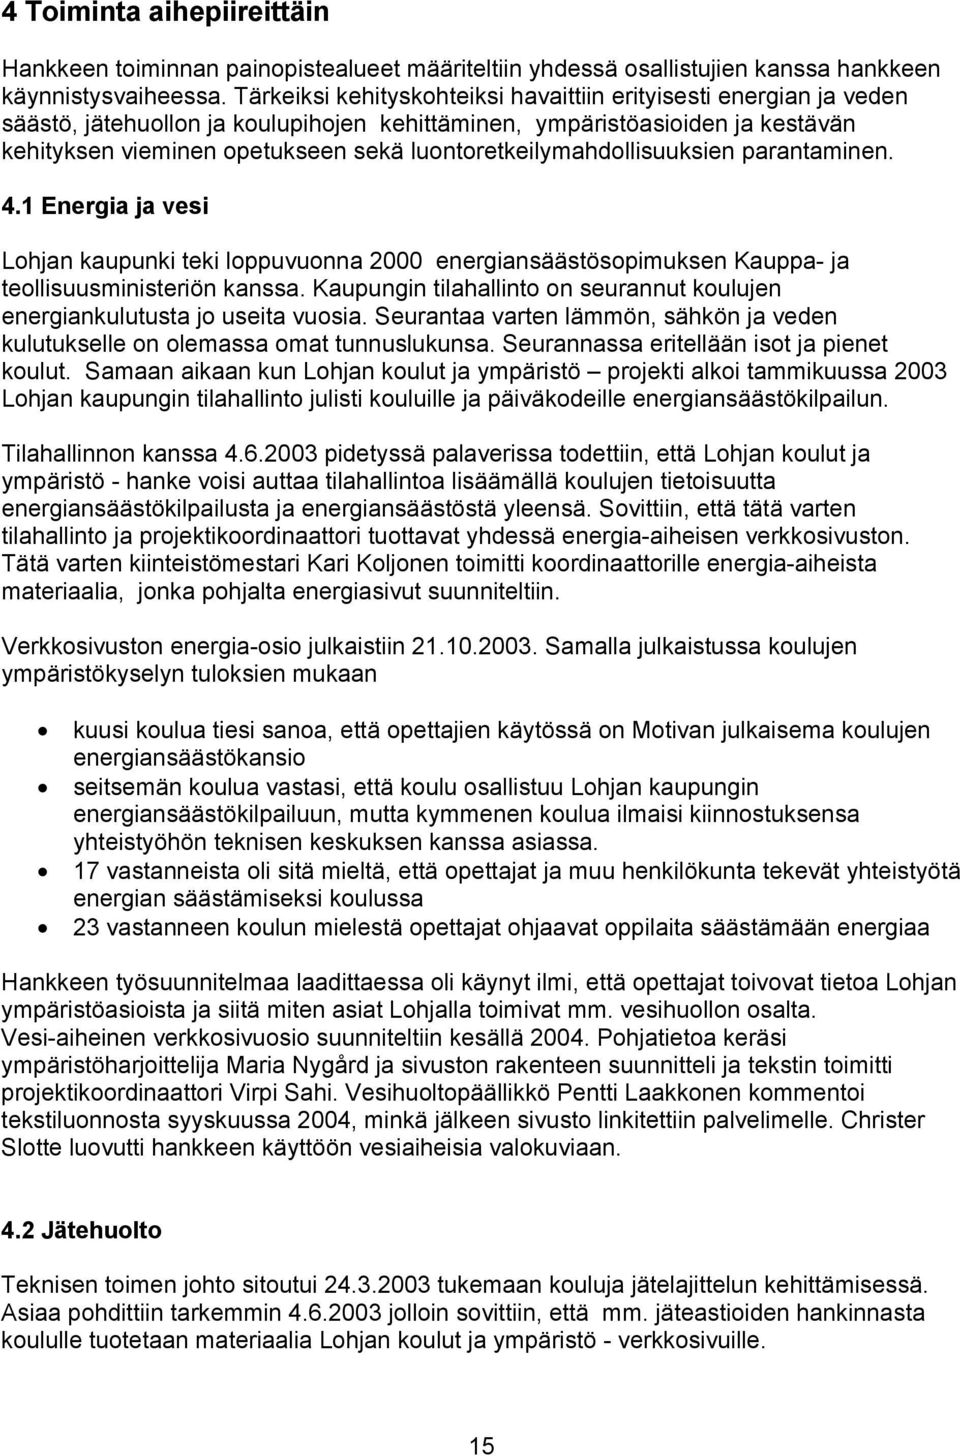 luontoretkeilymahdollisuuksien parantaminen. 4.1 Energia ja vesi Lohjan kaupunki teki loppuvuonna 2000 energiansäästösopimuksen Kauppa- ja teollisuusministeriön kanssa.